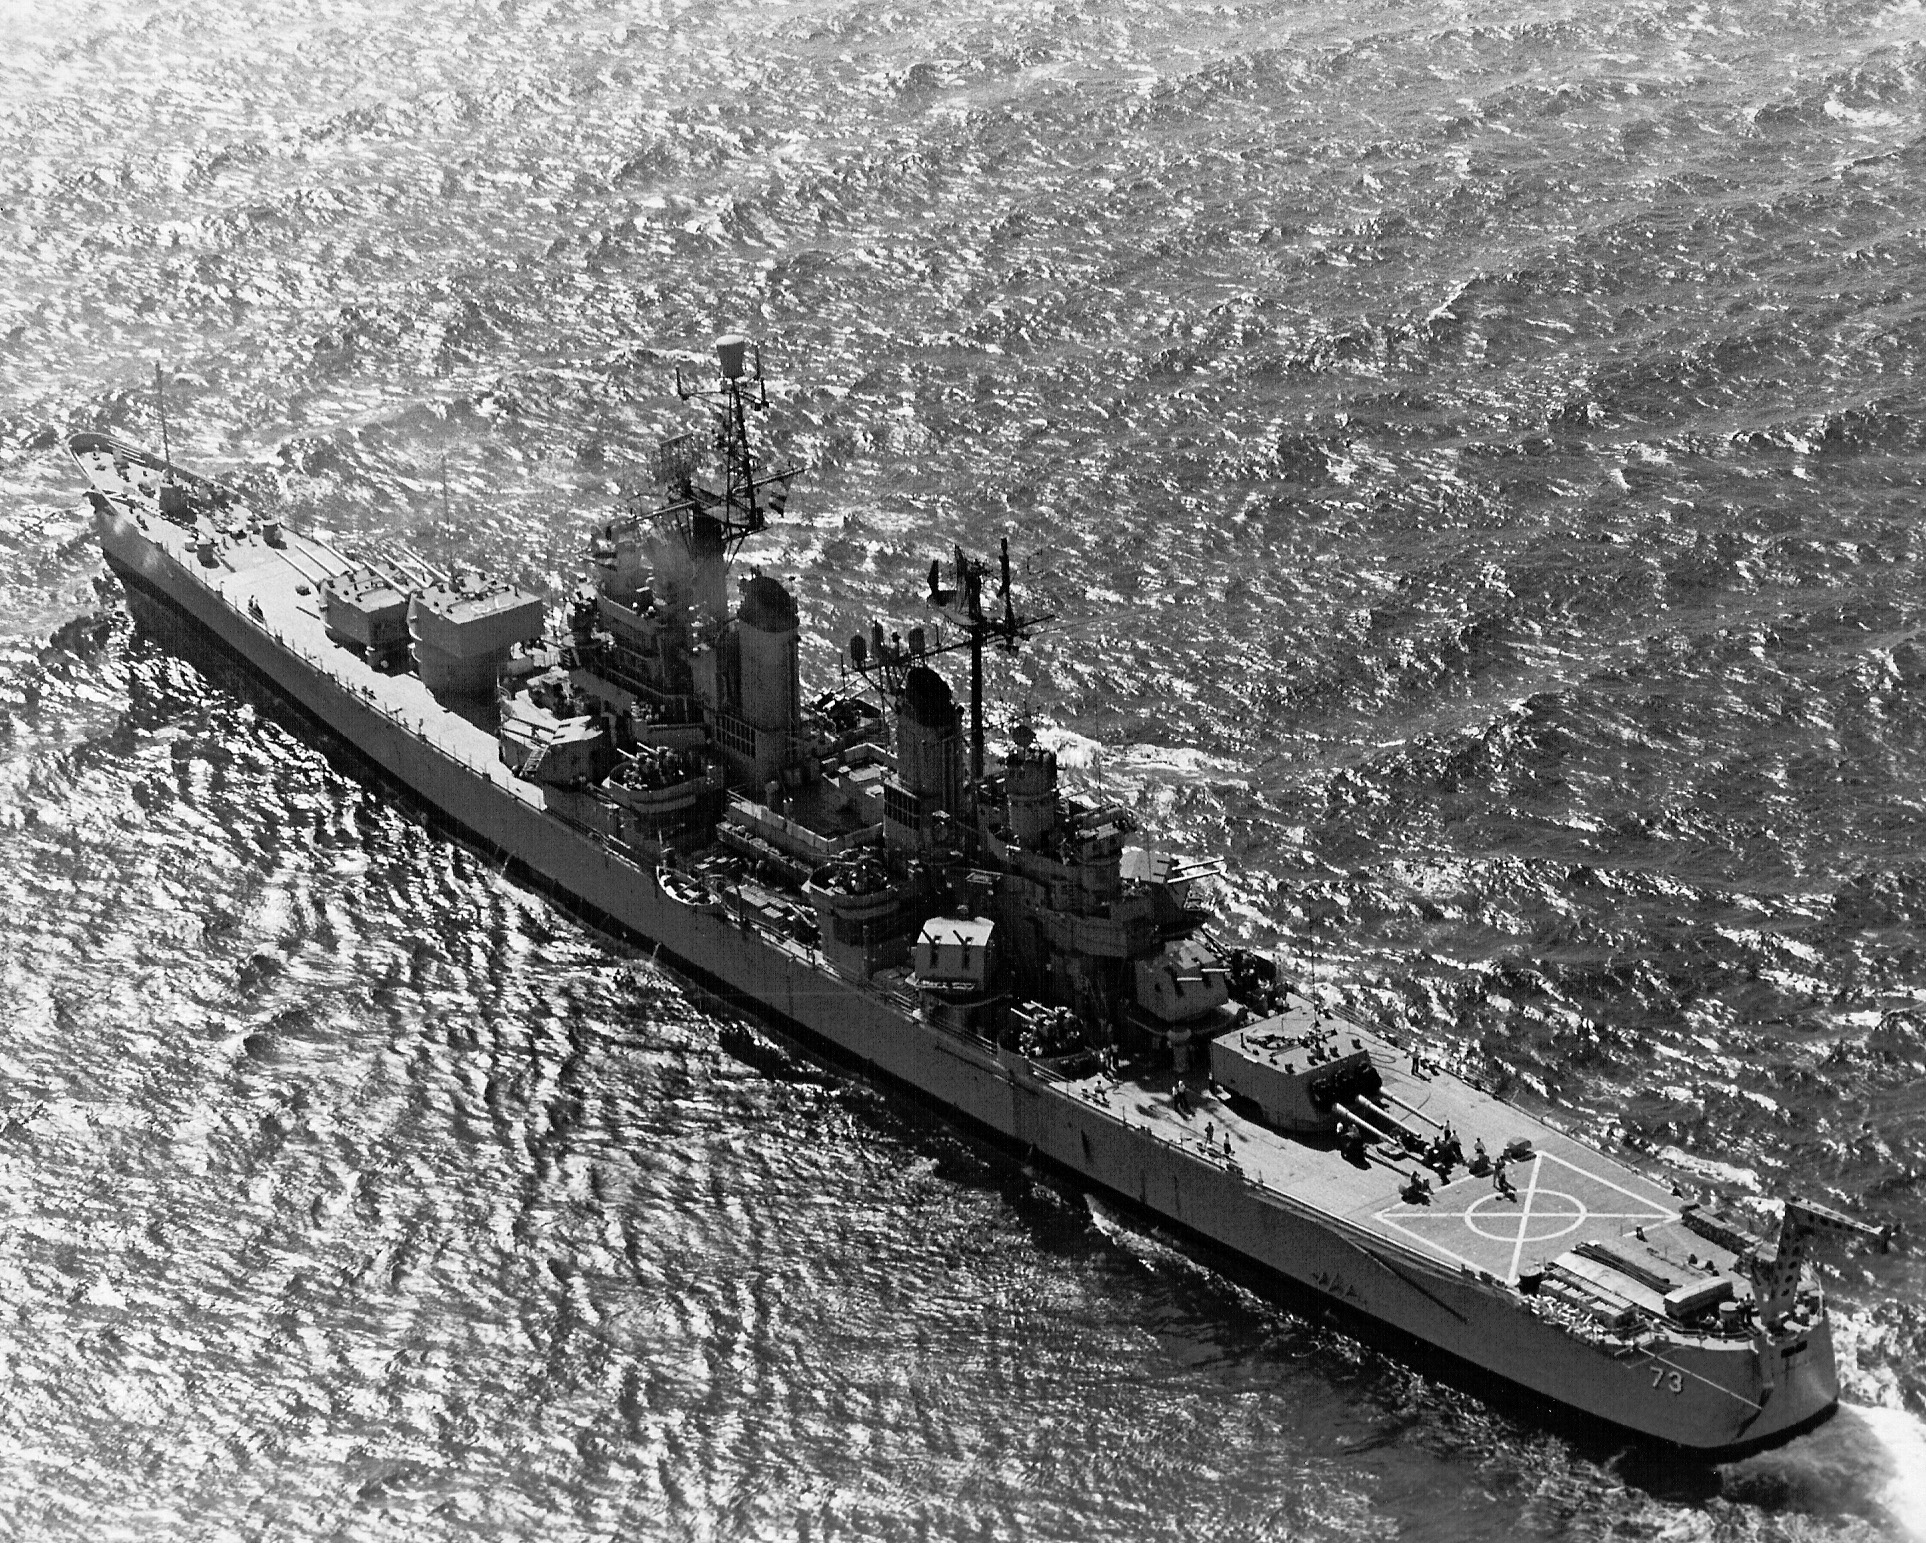 USS Saint Paul off Vietnam, 6 Jul 1967